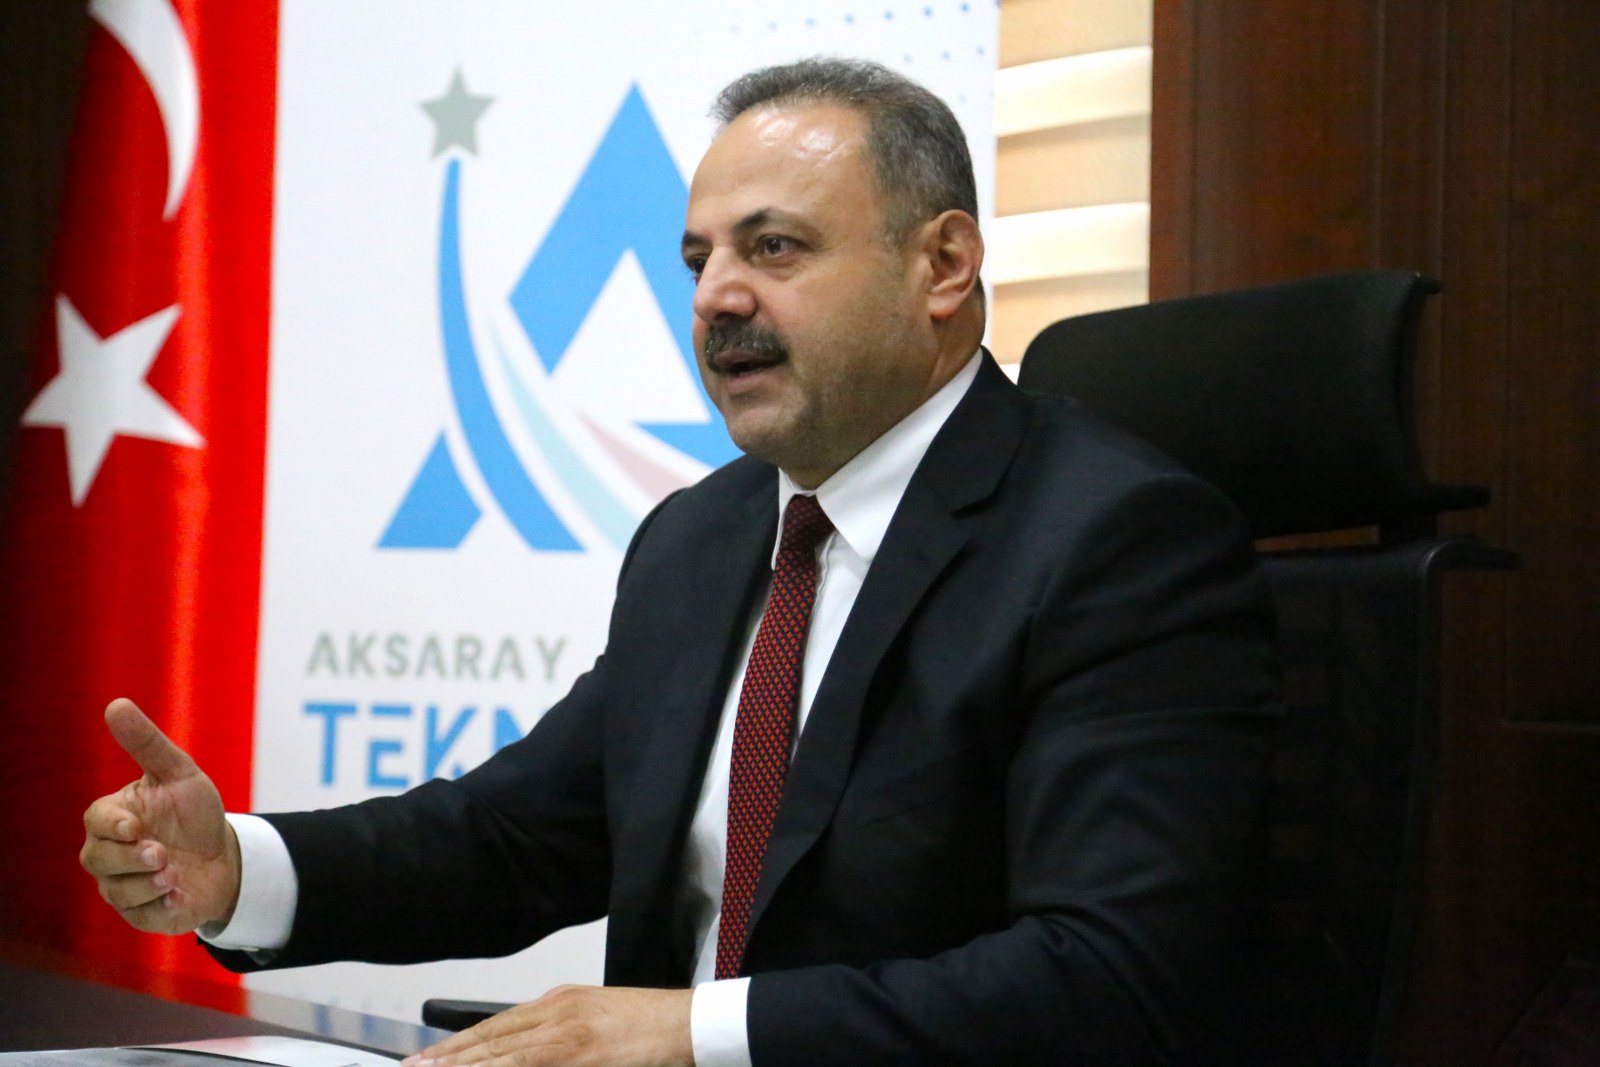 Aksaray TEKNOPARK yeni yönetim kurulunu belirledi